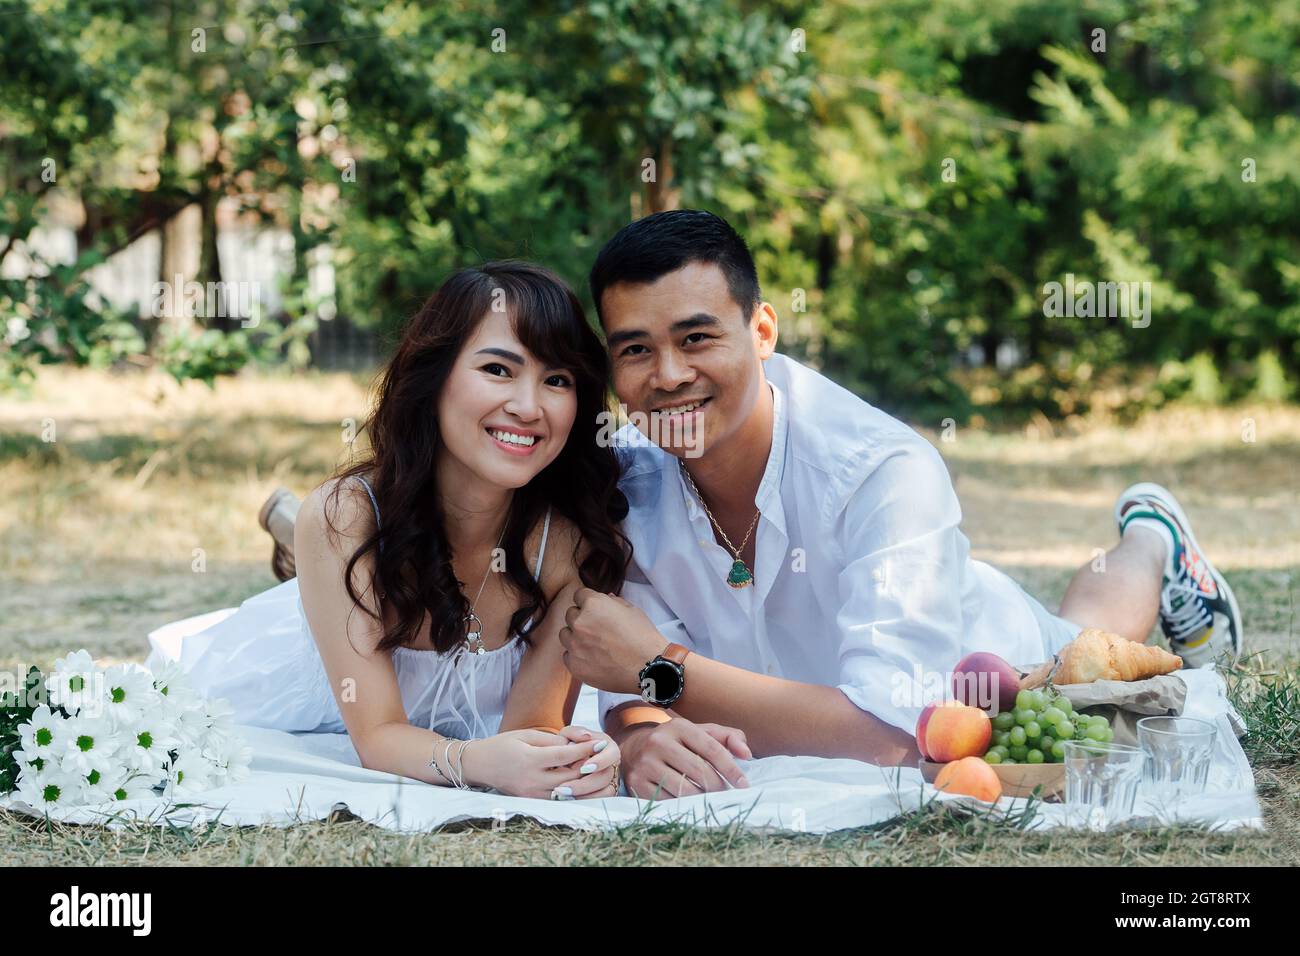 Un couple asiatique souriant se fait un pique-nique dans un parc, allongé sur leurs estomacs. Homme et femme en vêtements blancs dans une ombre d'arbre. Banque D'Images